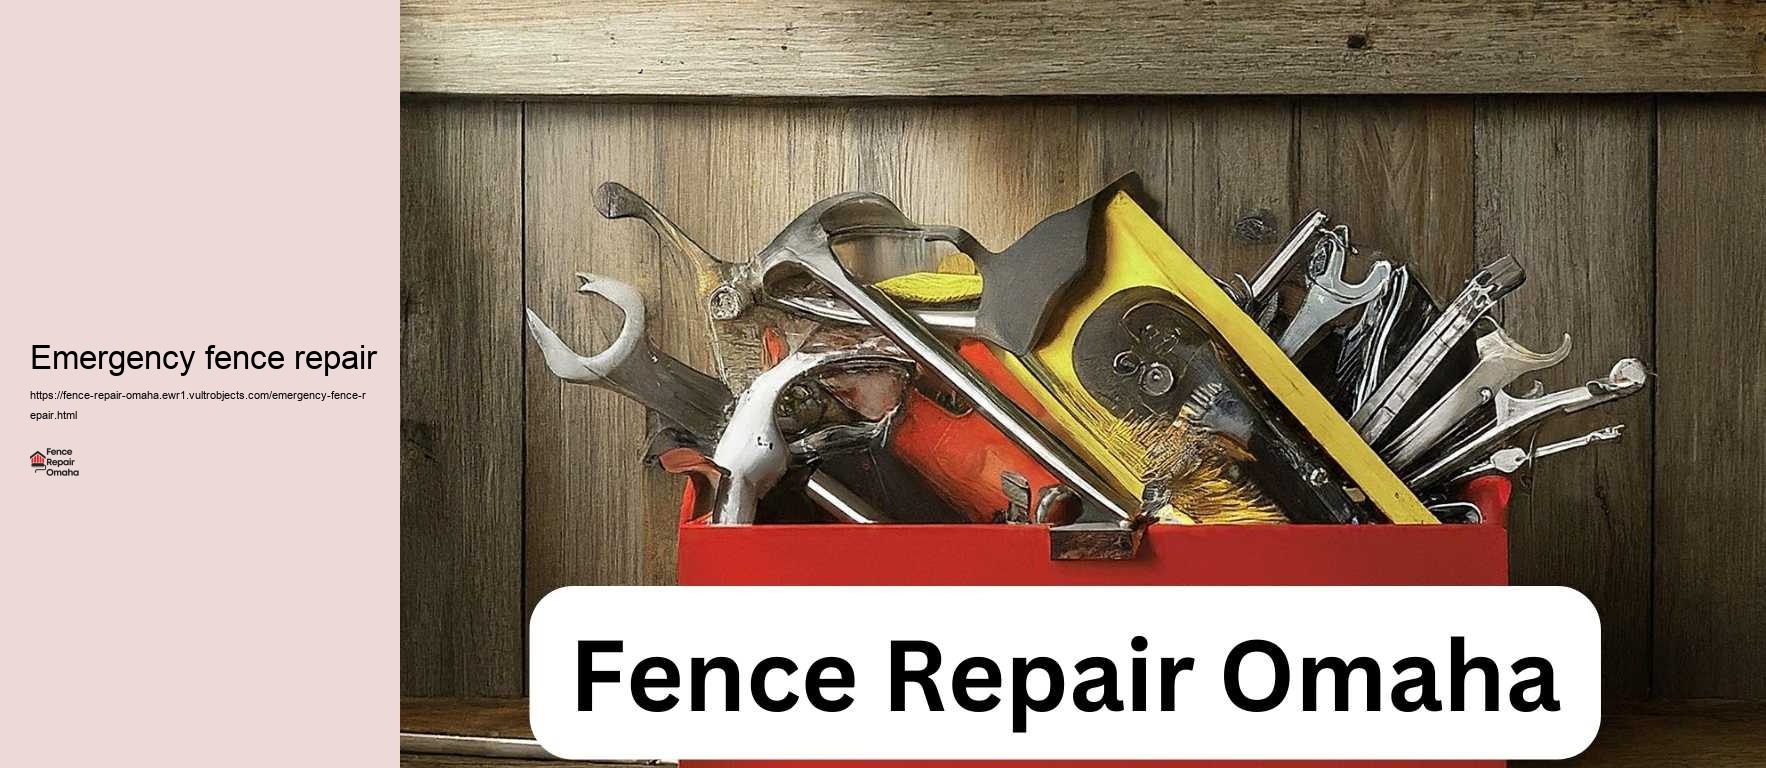 Emergency fence repair